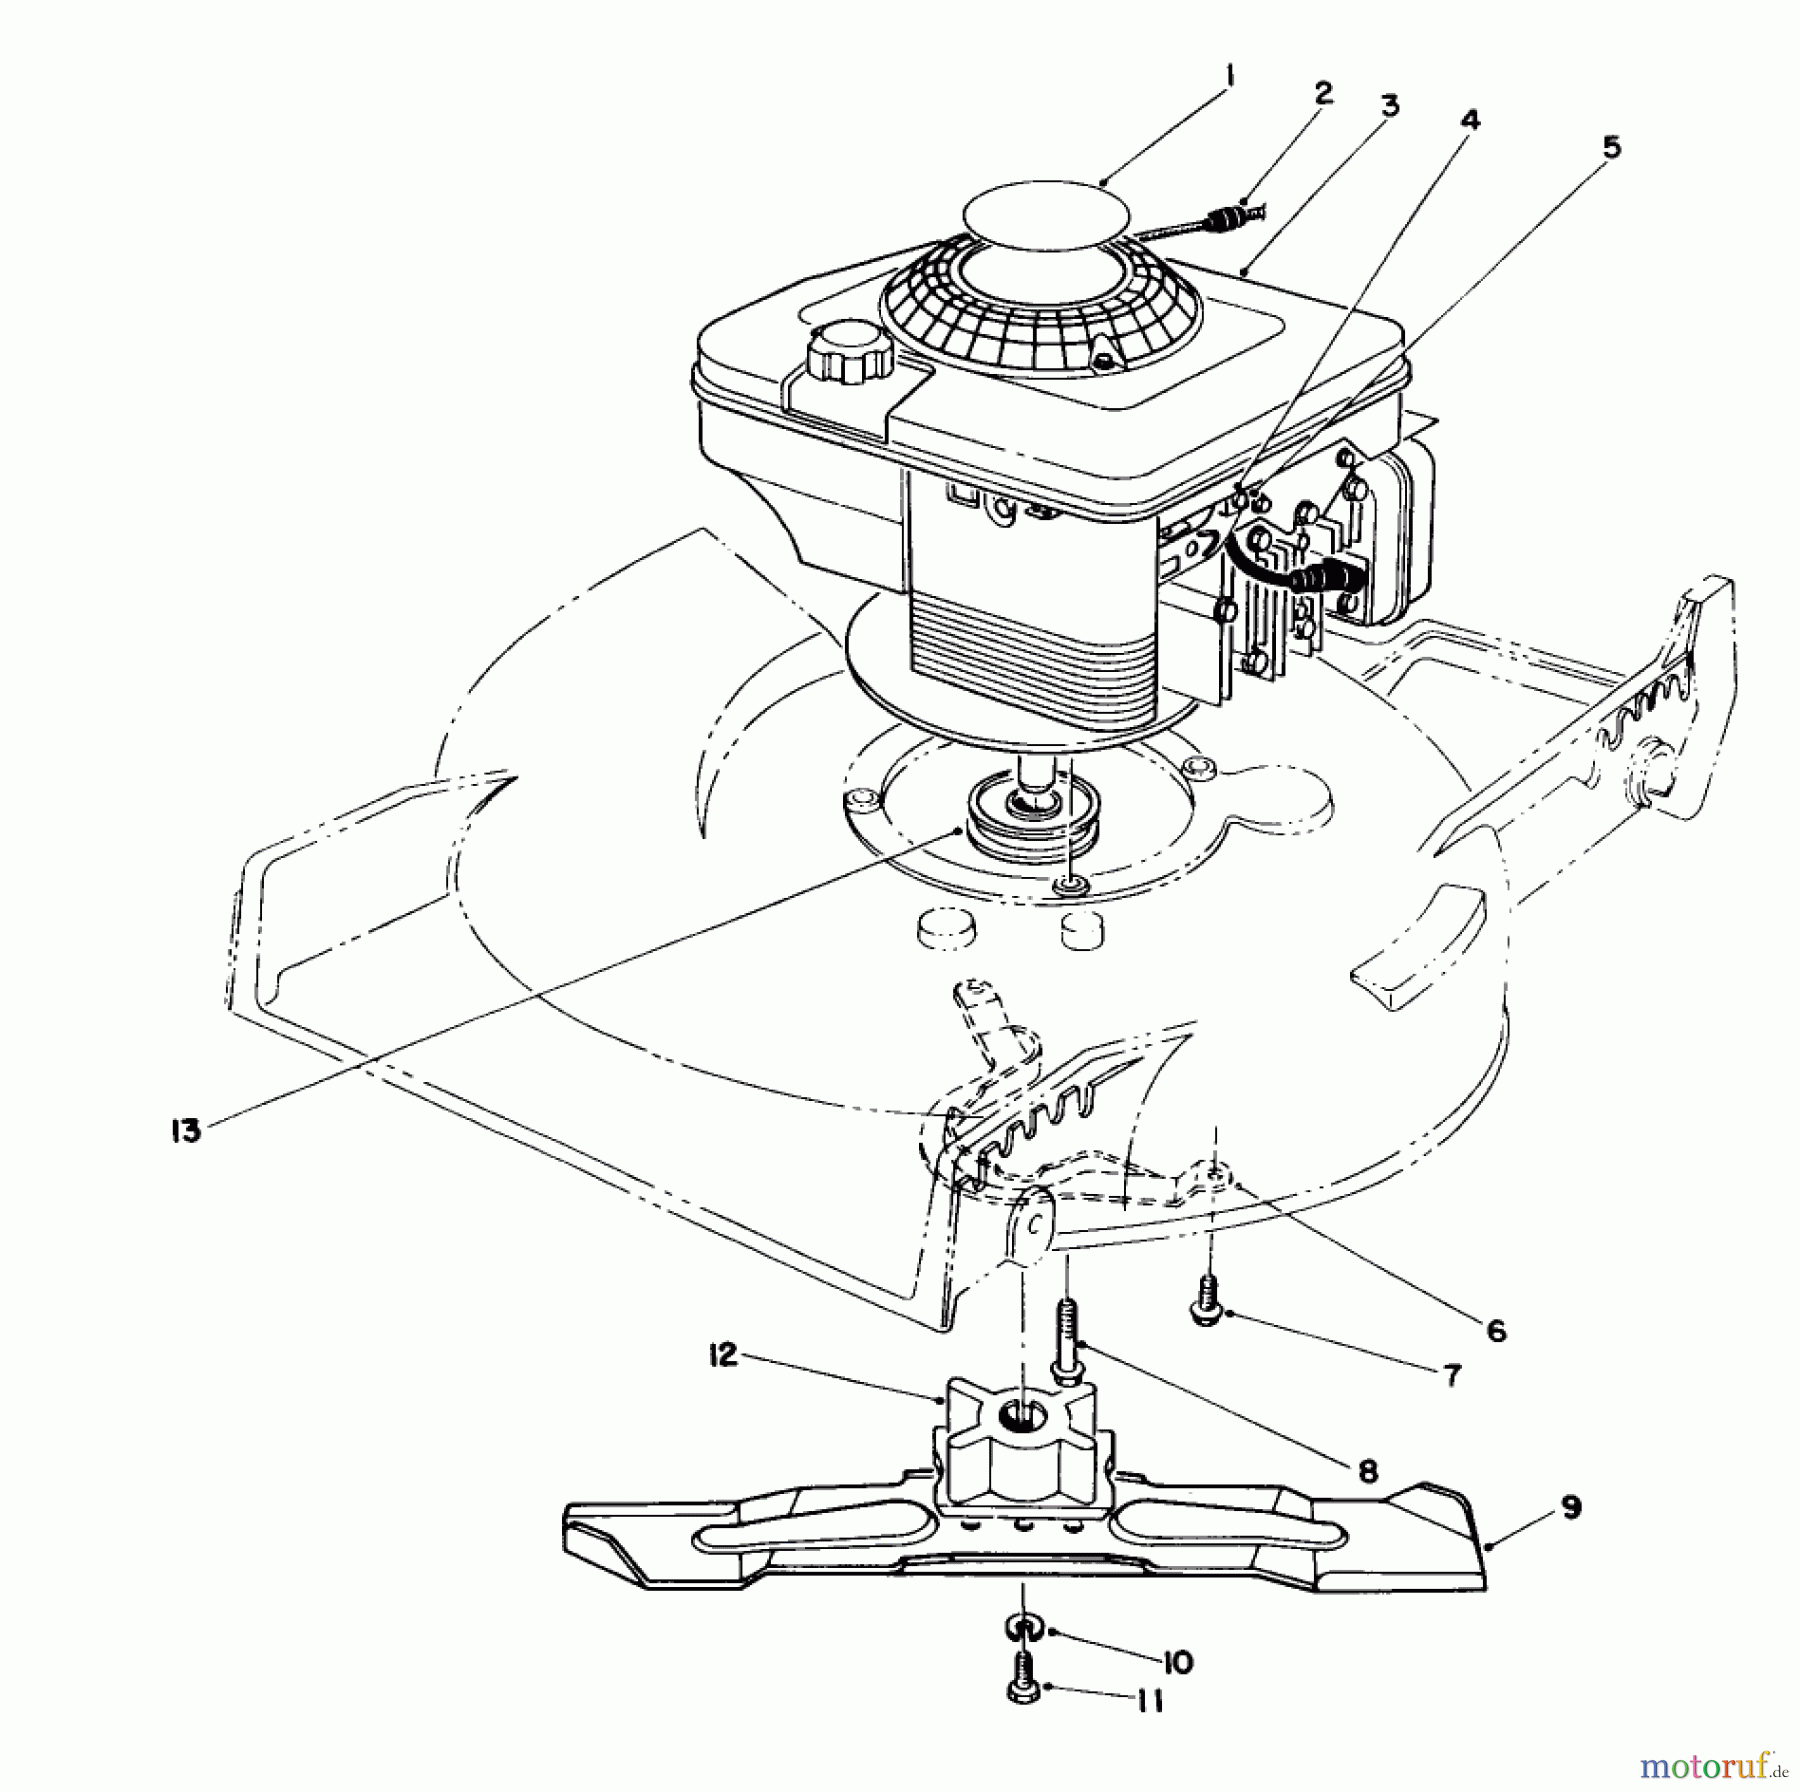  Toro Neu Mowers, Walk-Behind Seite 1 20216 - Toro Lawnmower, 1991 (1000001-1999999) ENGINE ASSEMBLY